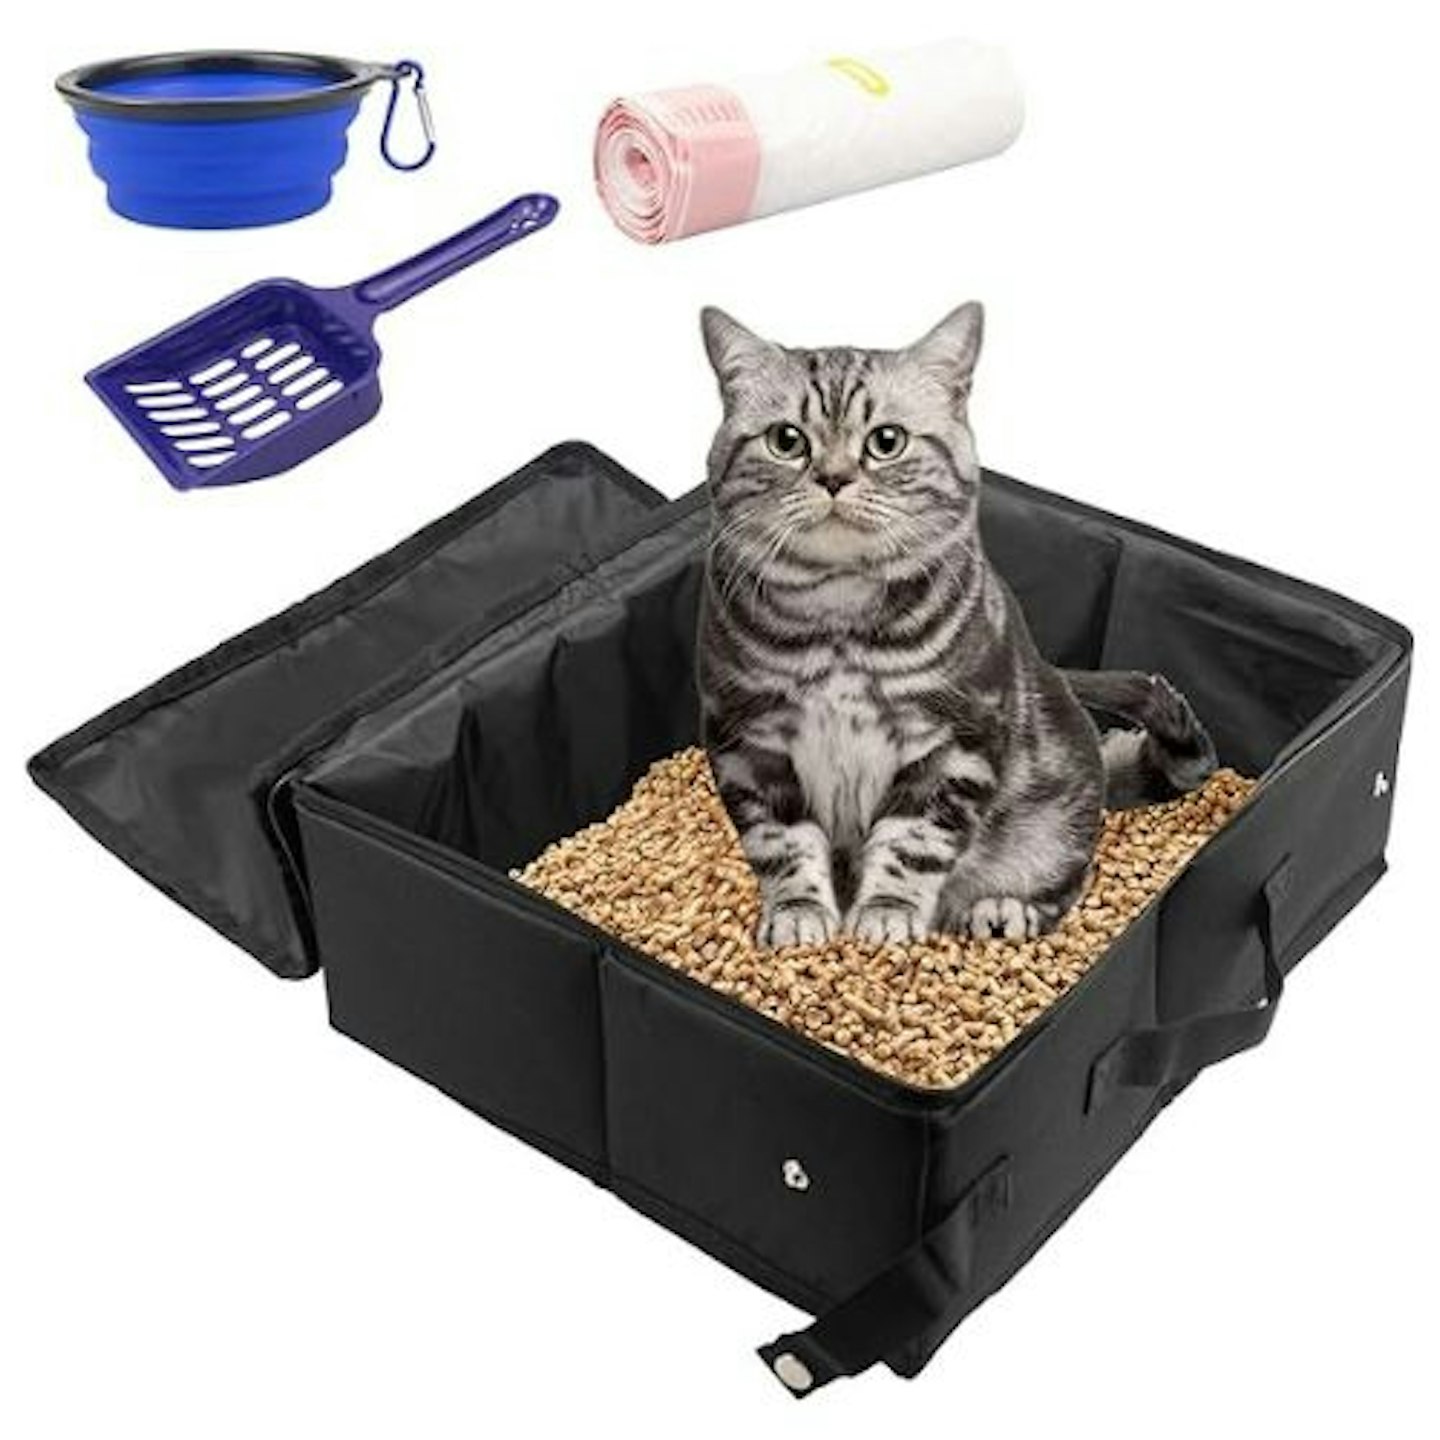 INUAN Travel Cat Litter Box